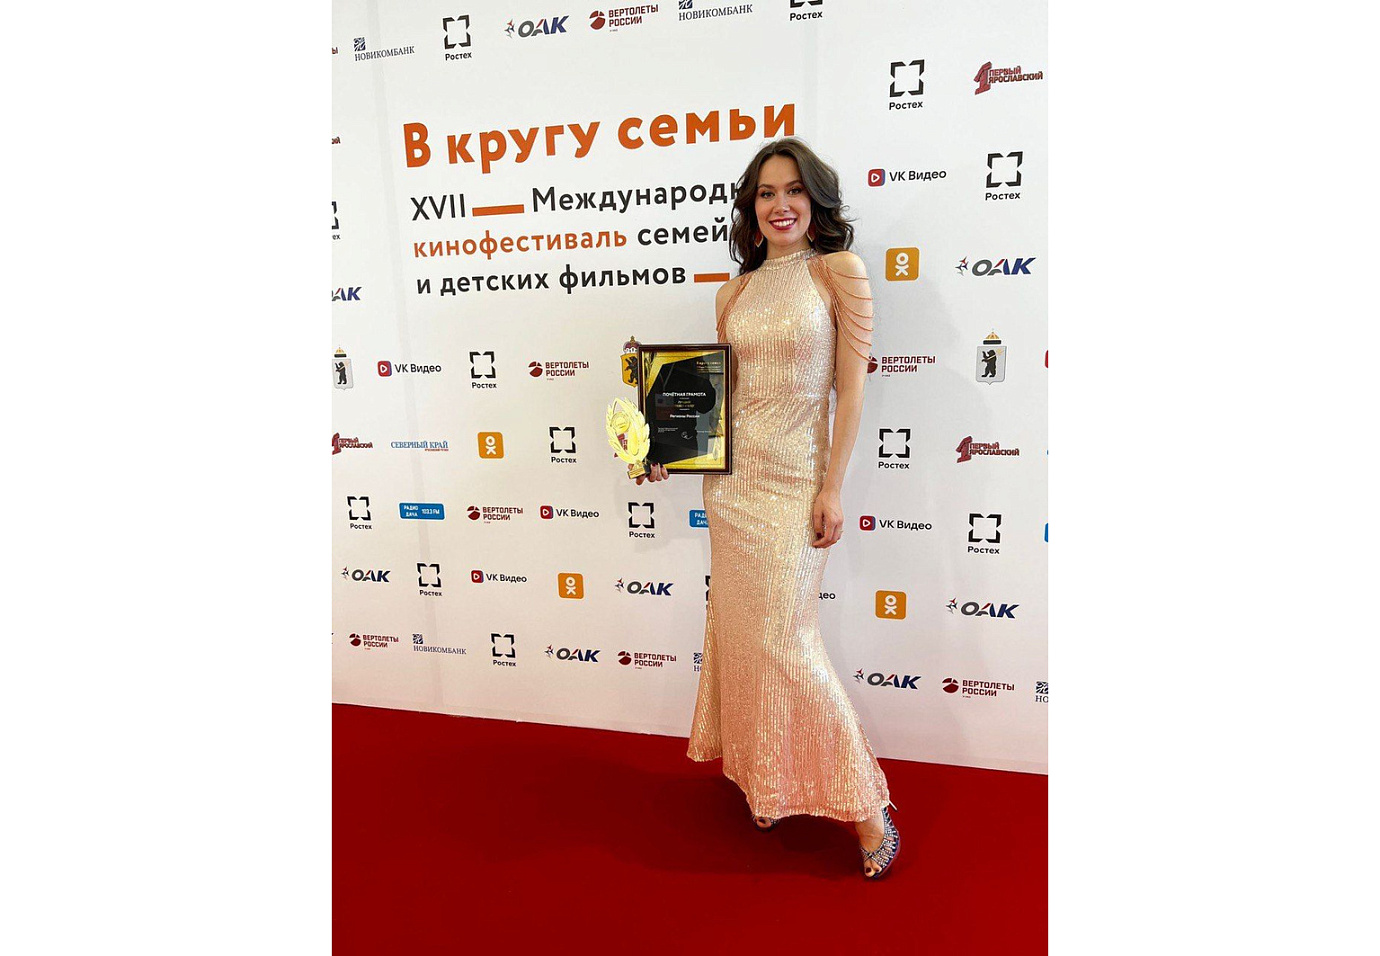 Фонд Росконгресс победил в номинации «Лучший тревел-блог» на XVII Международном кинофестивале семейных и детских фильмов «В кругу семьи»